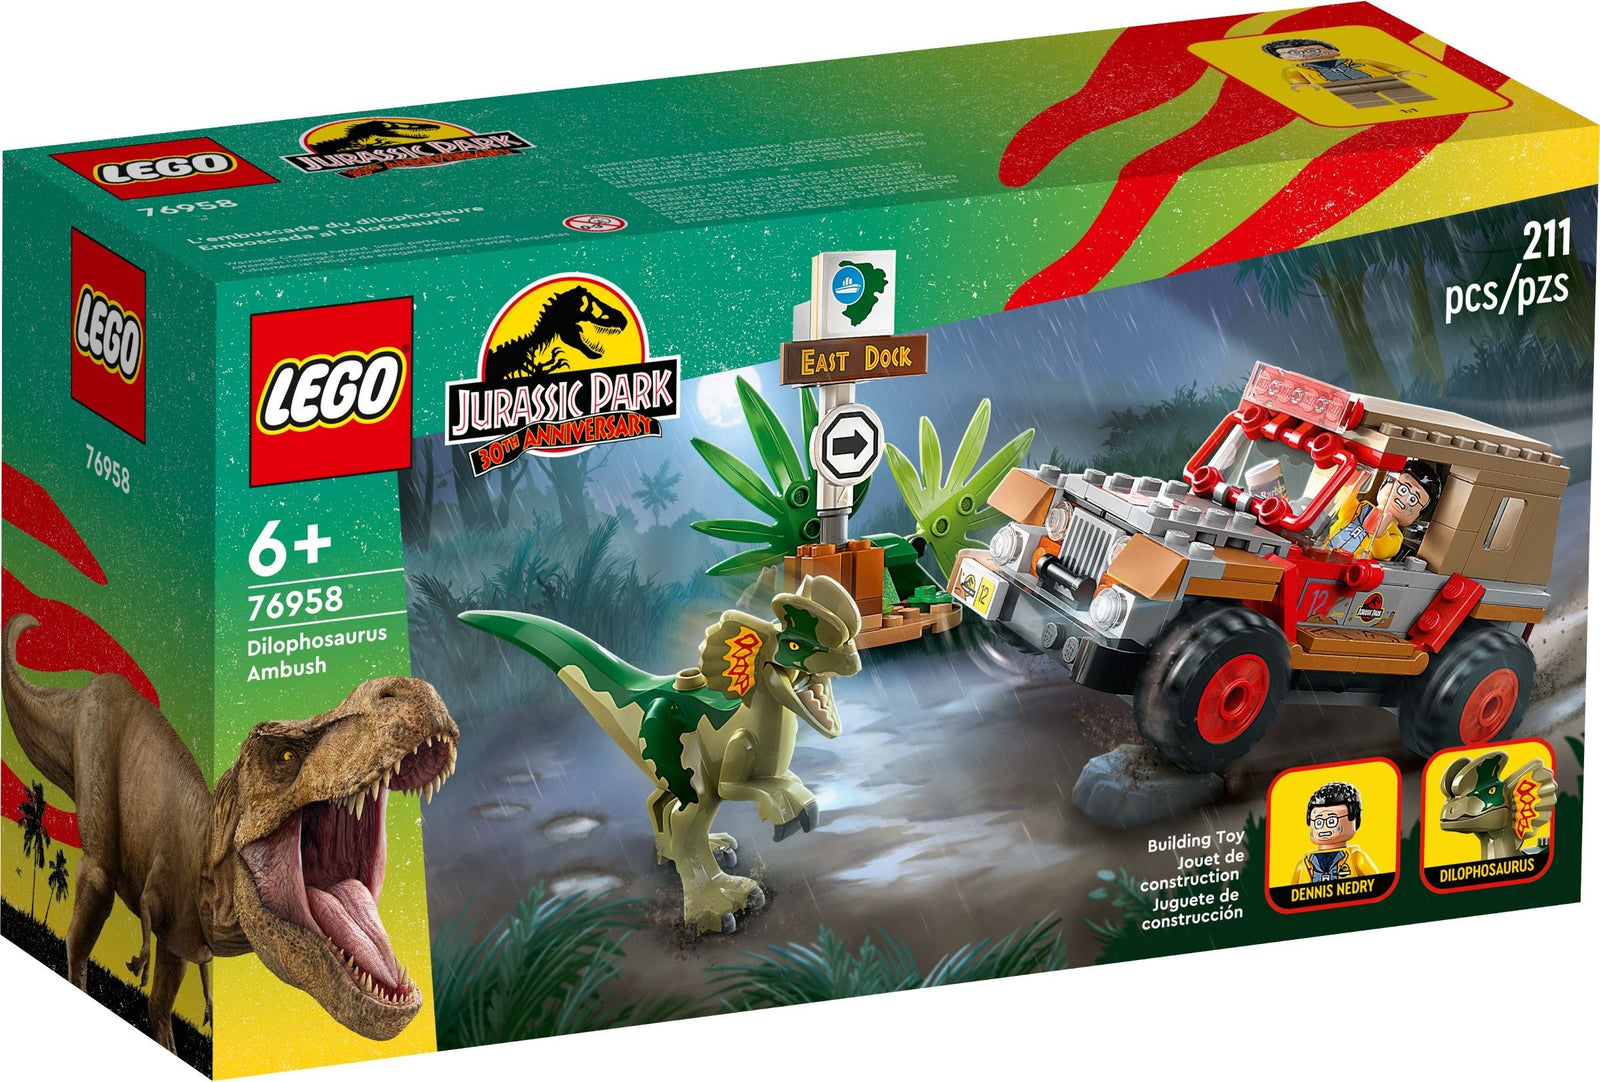 LEGO 10939 DUPLO Jurassic World Ausbruch des